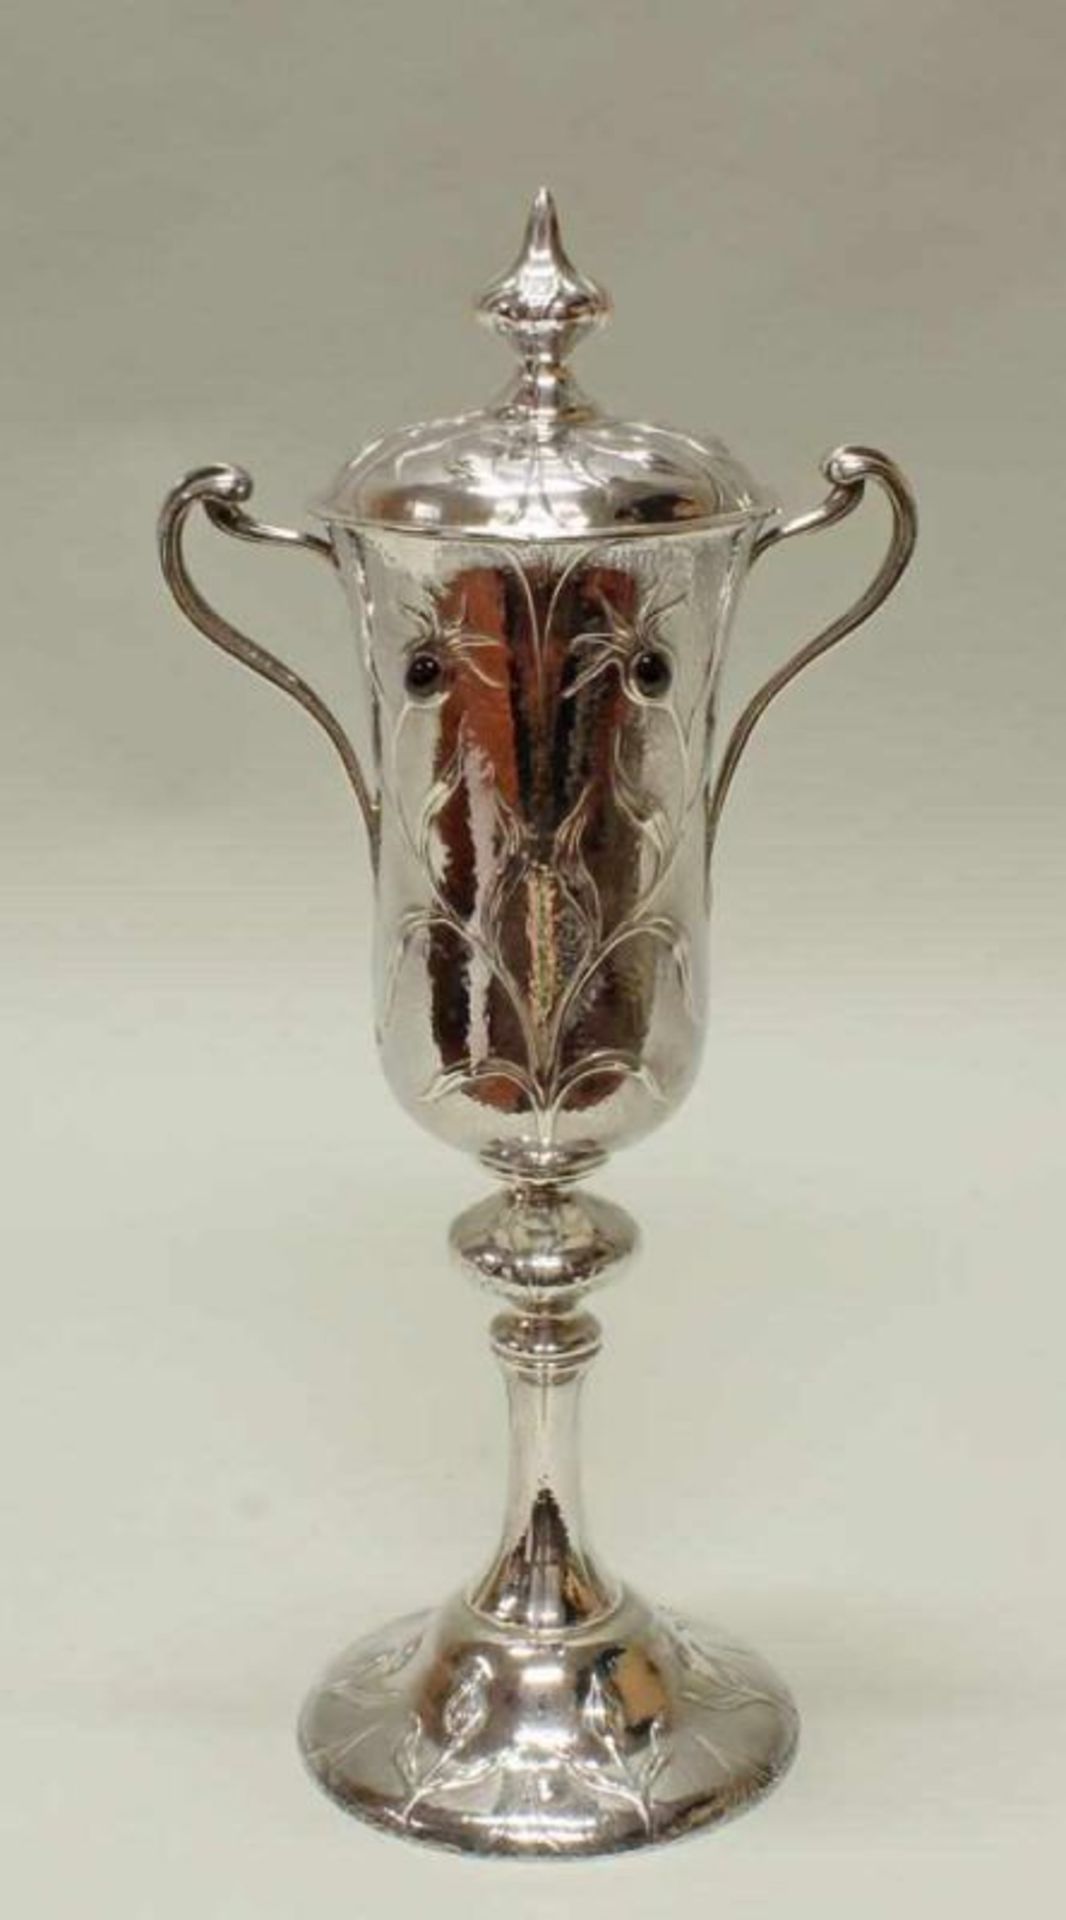 Deckelpokal, Silber 925, London, 1900, Gilbert Marks, Arts & Crafts, floraler Dekor mit vier